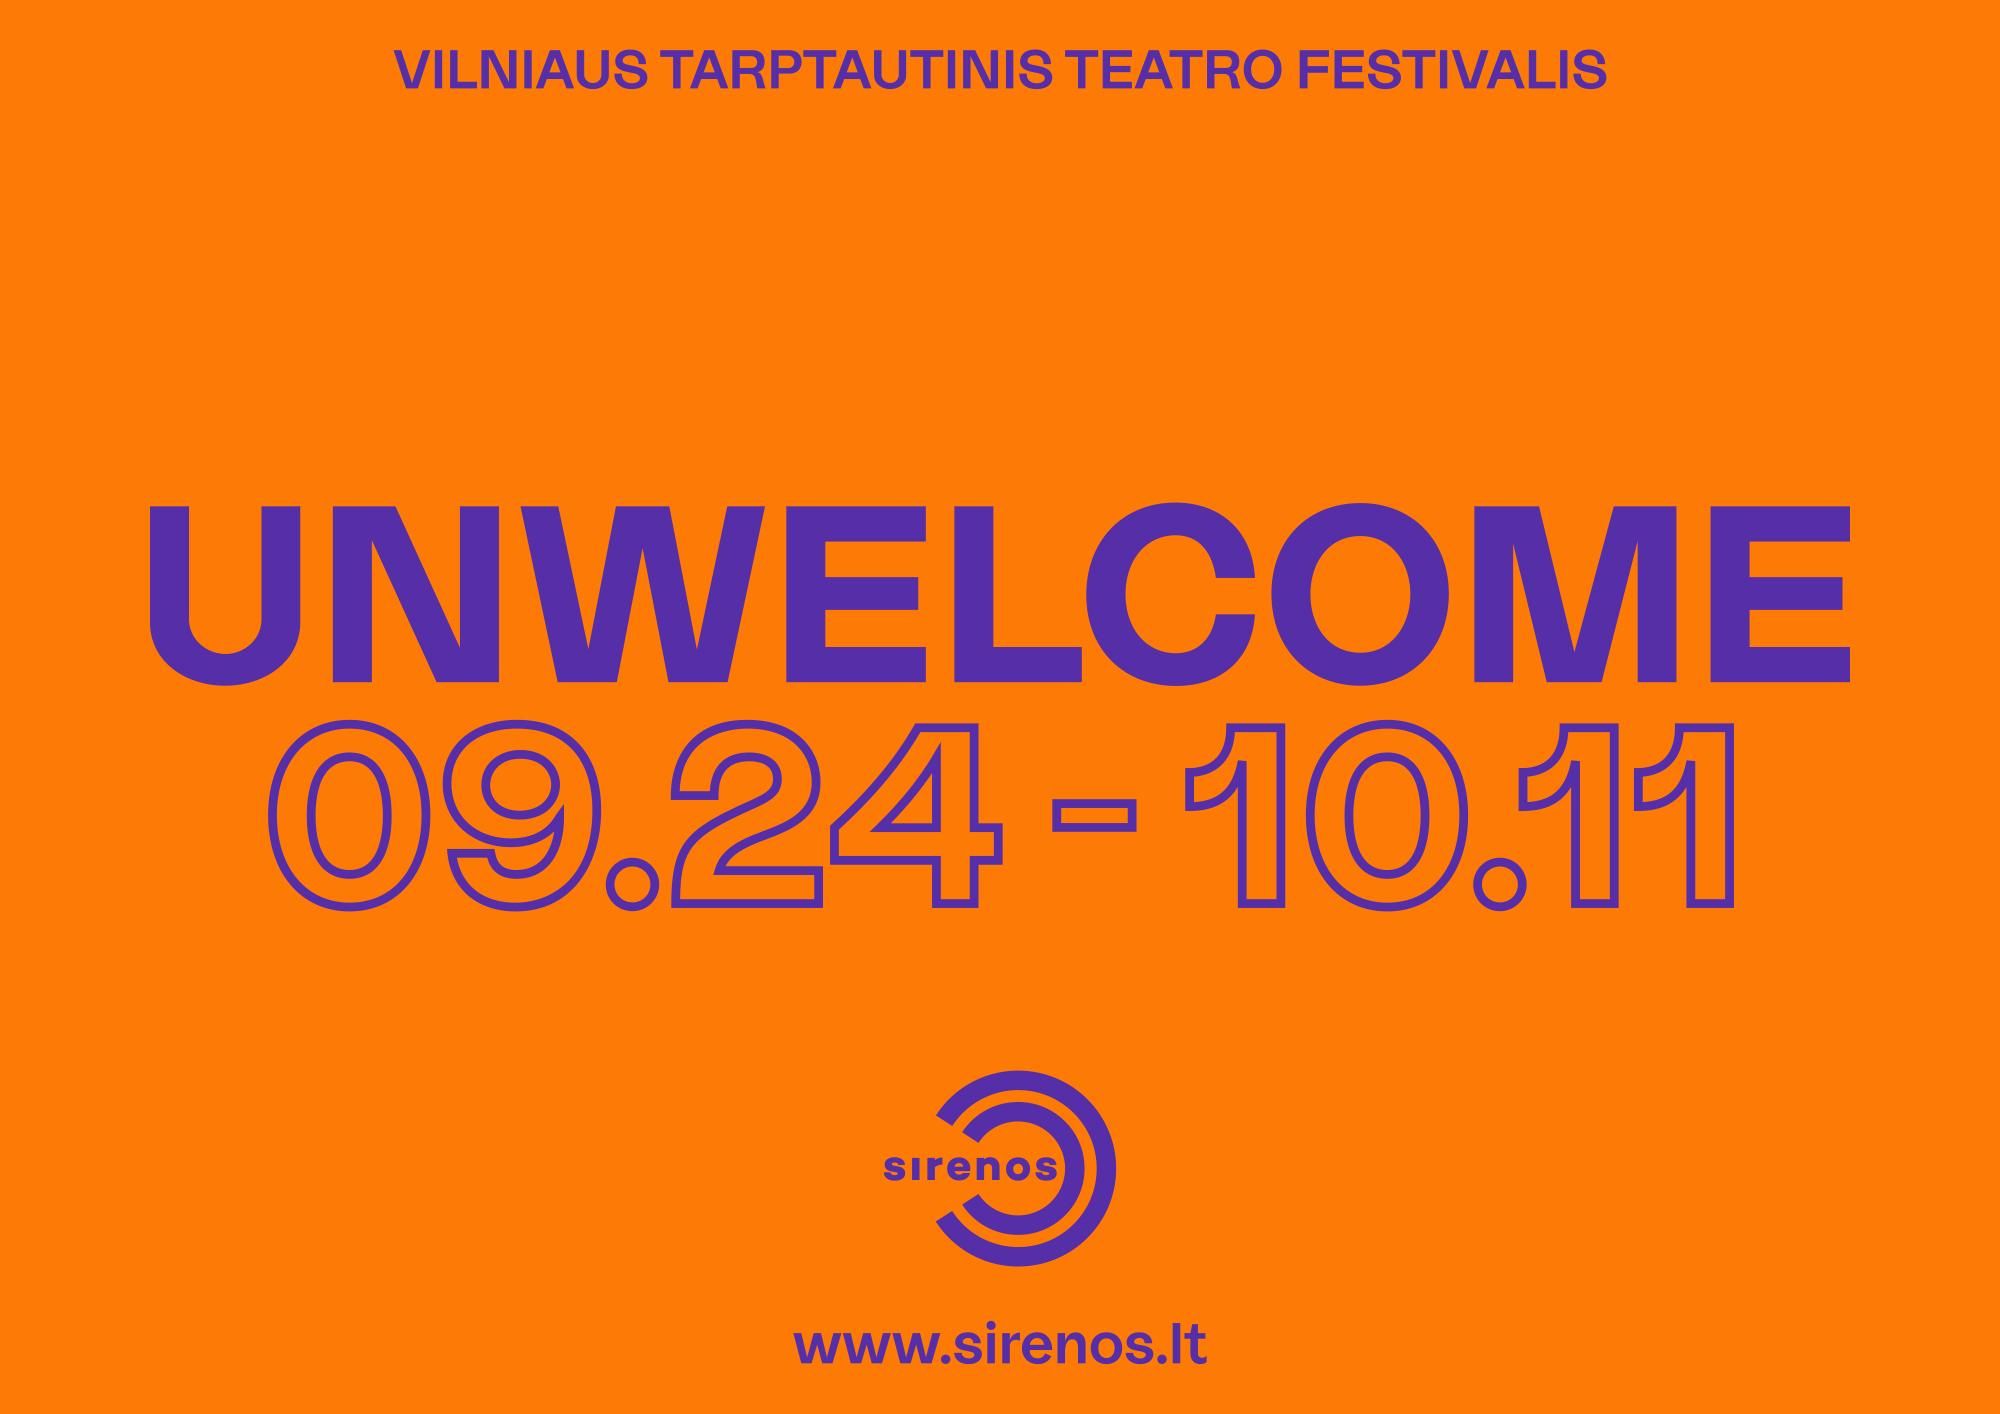 Примечательно, что организаторы фестиваля в макете-анонсе мероприятия не боятся использовать букву, которой нет в литовском алфавите